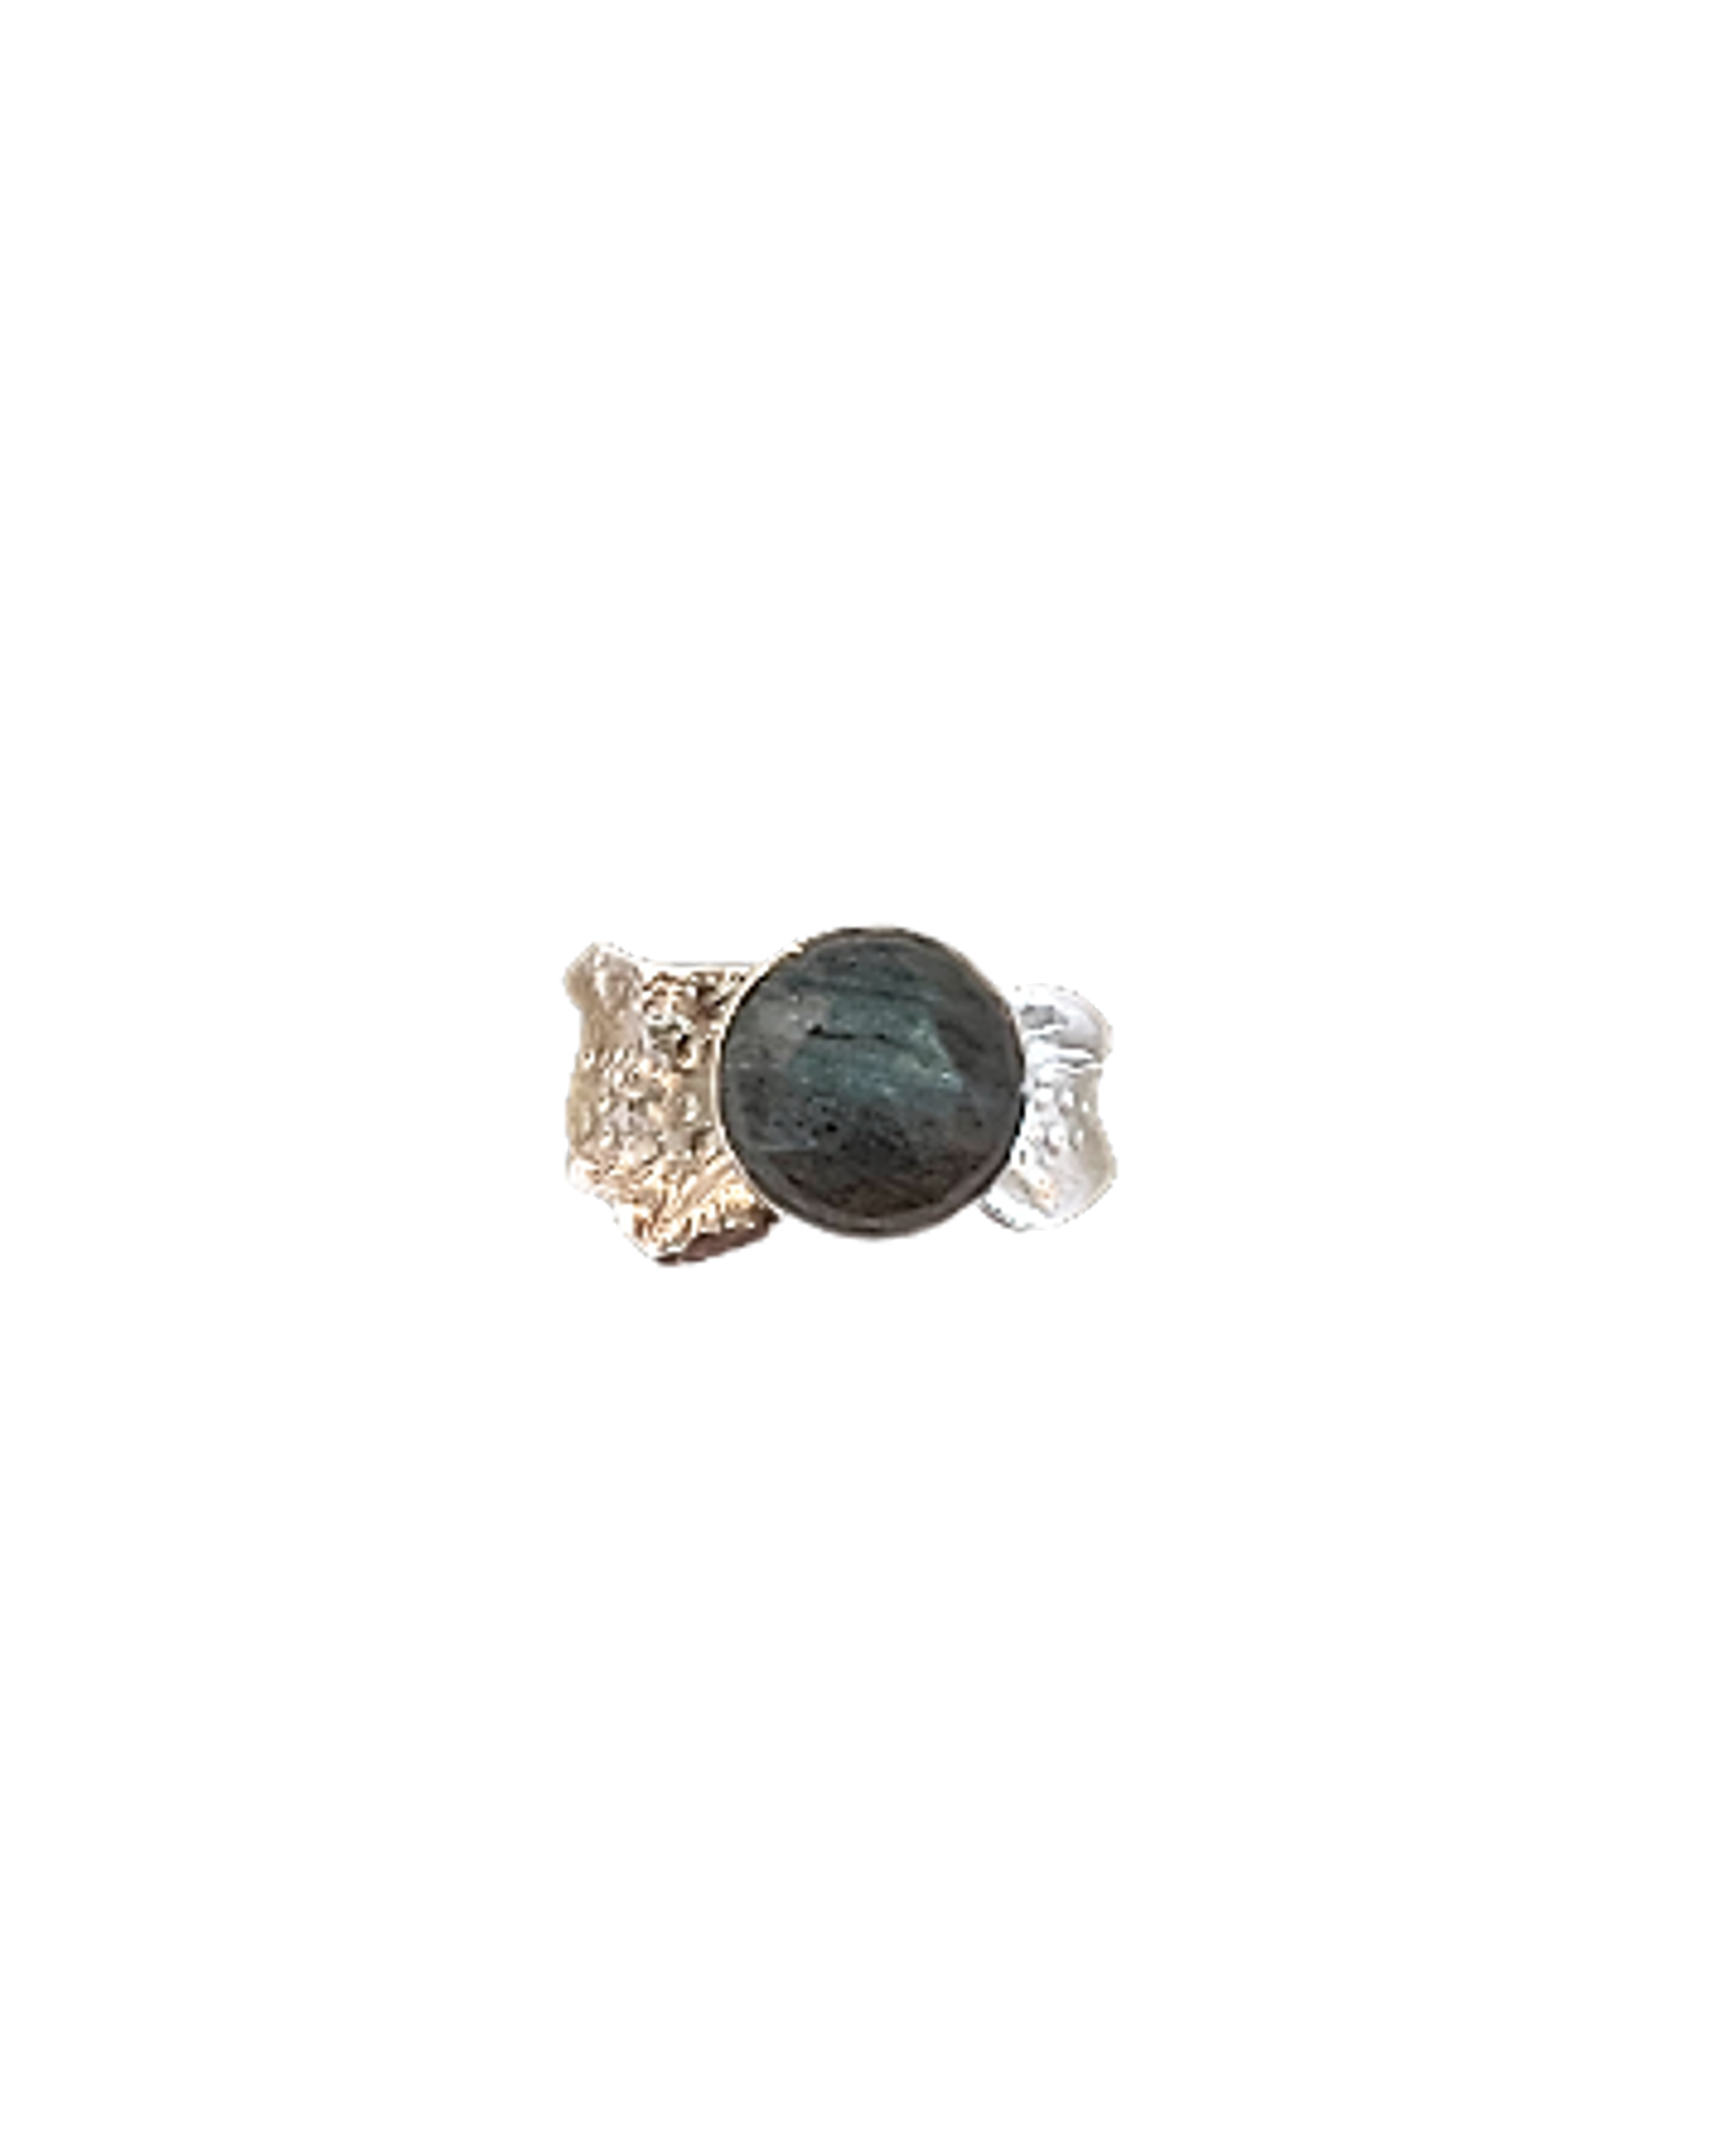 Ripple Ring - Labradorite (Round) by Kristen Baird